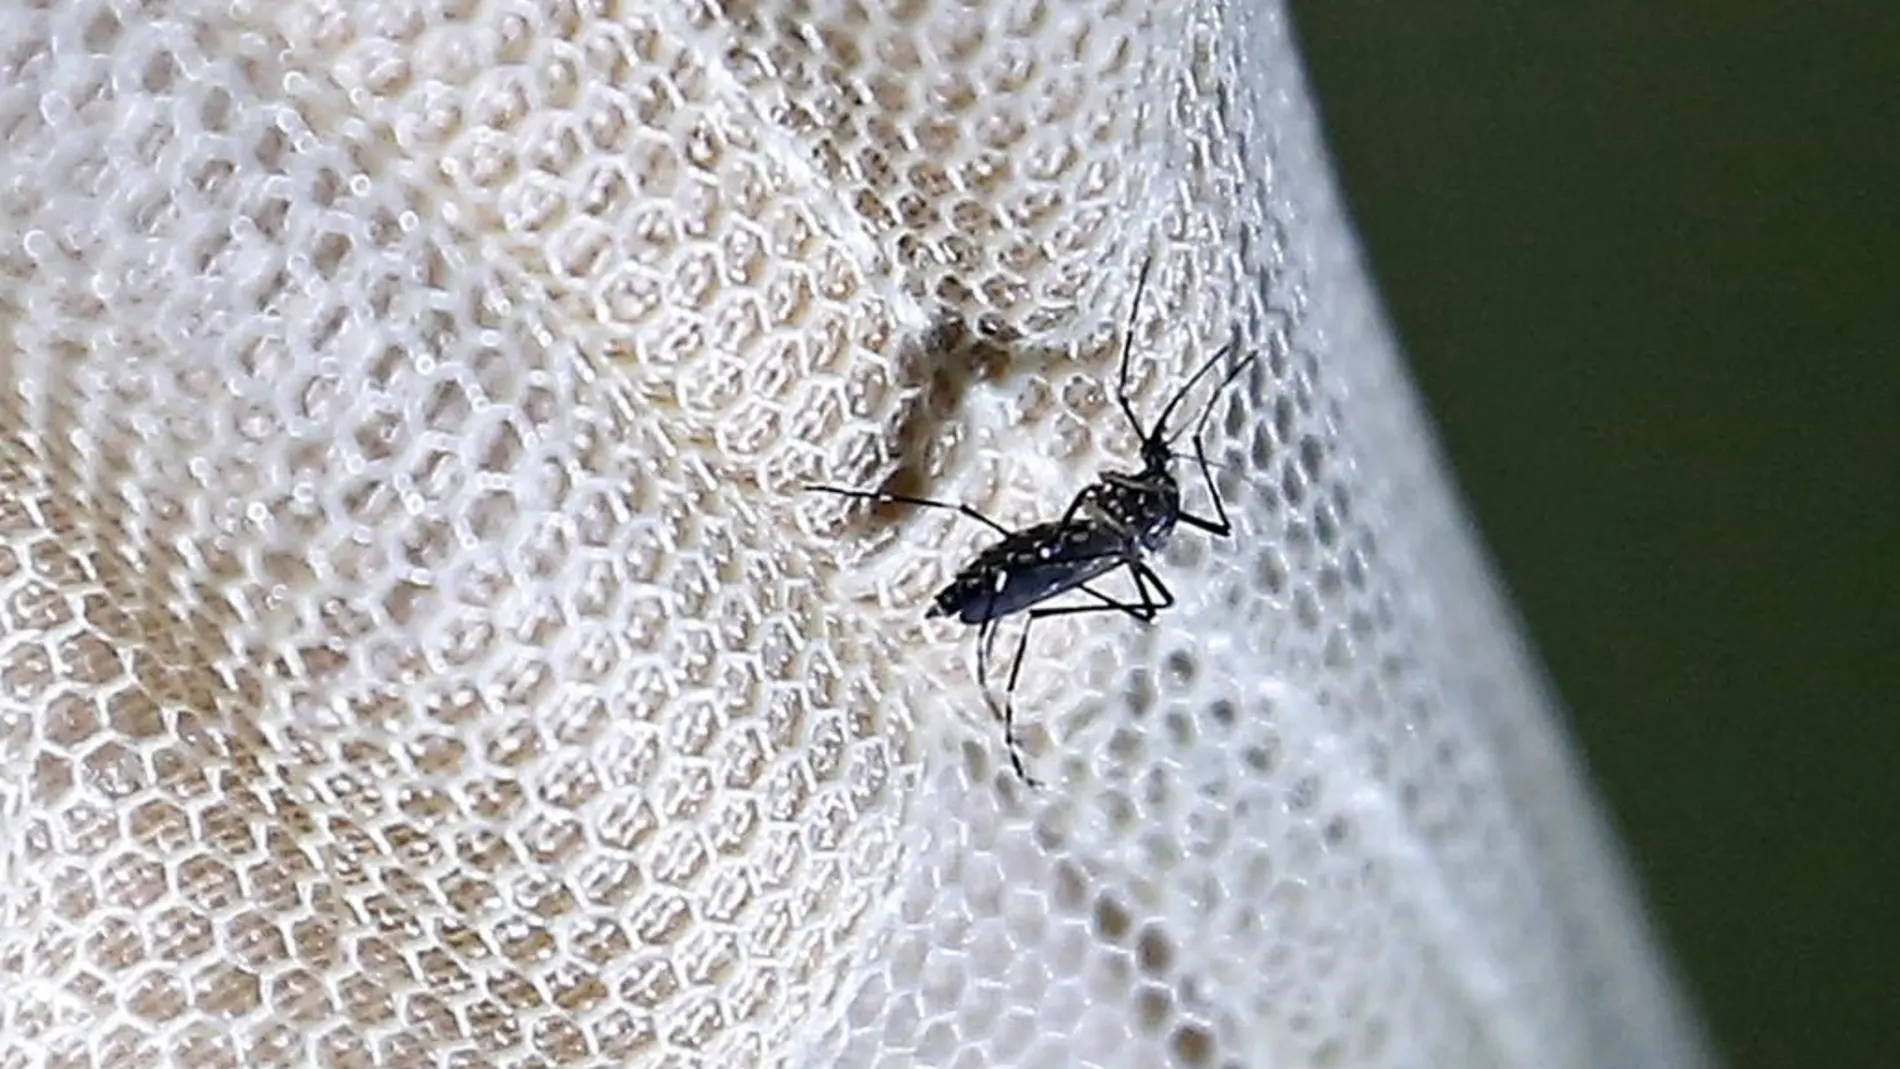 Vista del mosquito Aedes aegypti posado en una malla antimosquitos